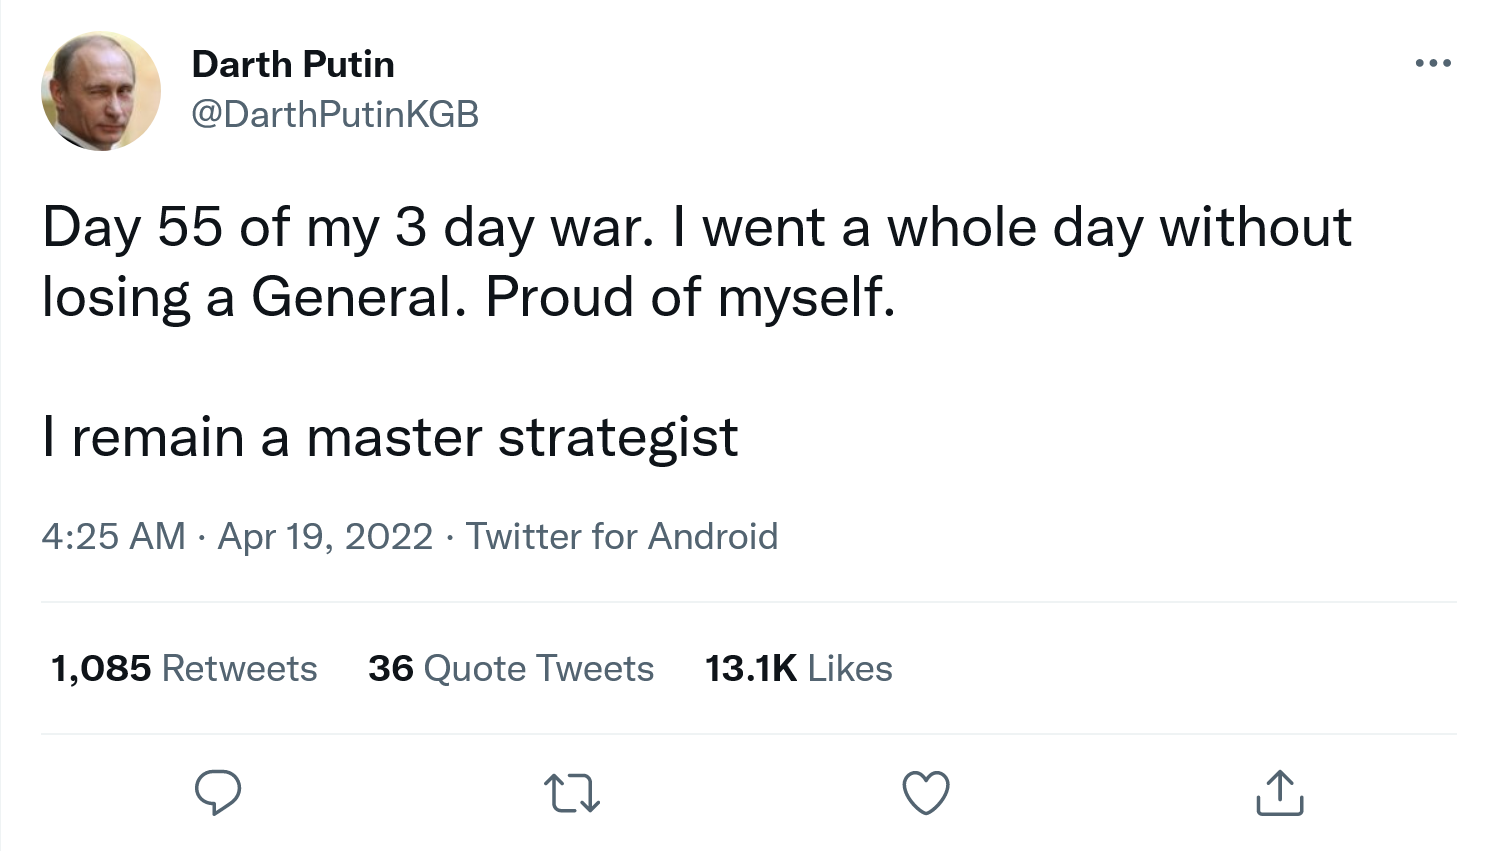 Screenshot 2022-04-19 at 10-18-10 Darth Putin on Twitter.png